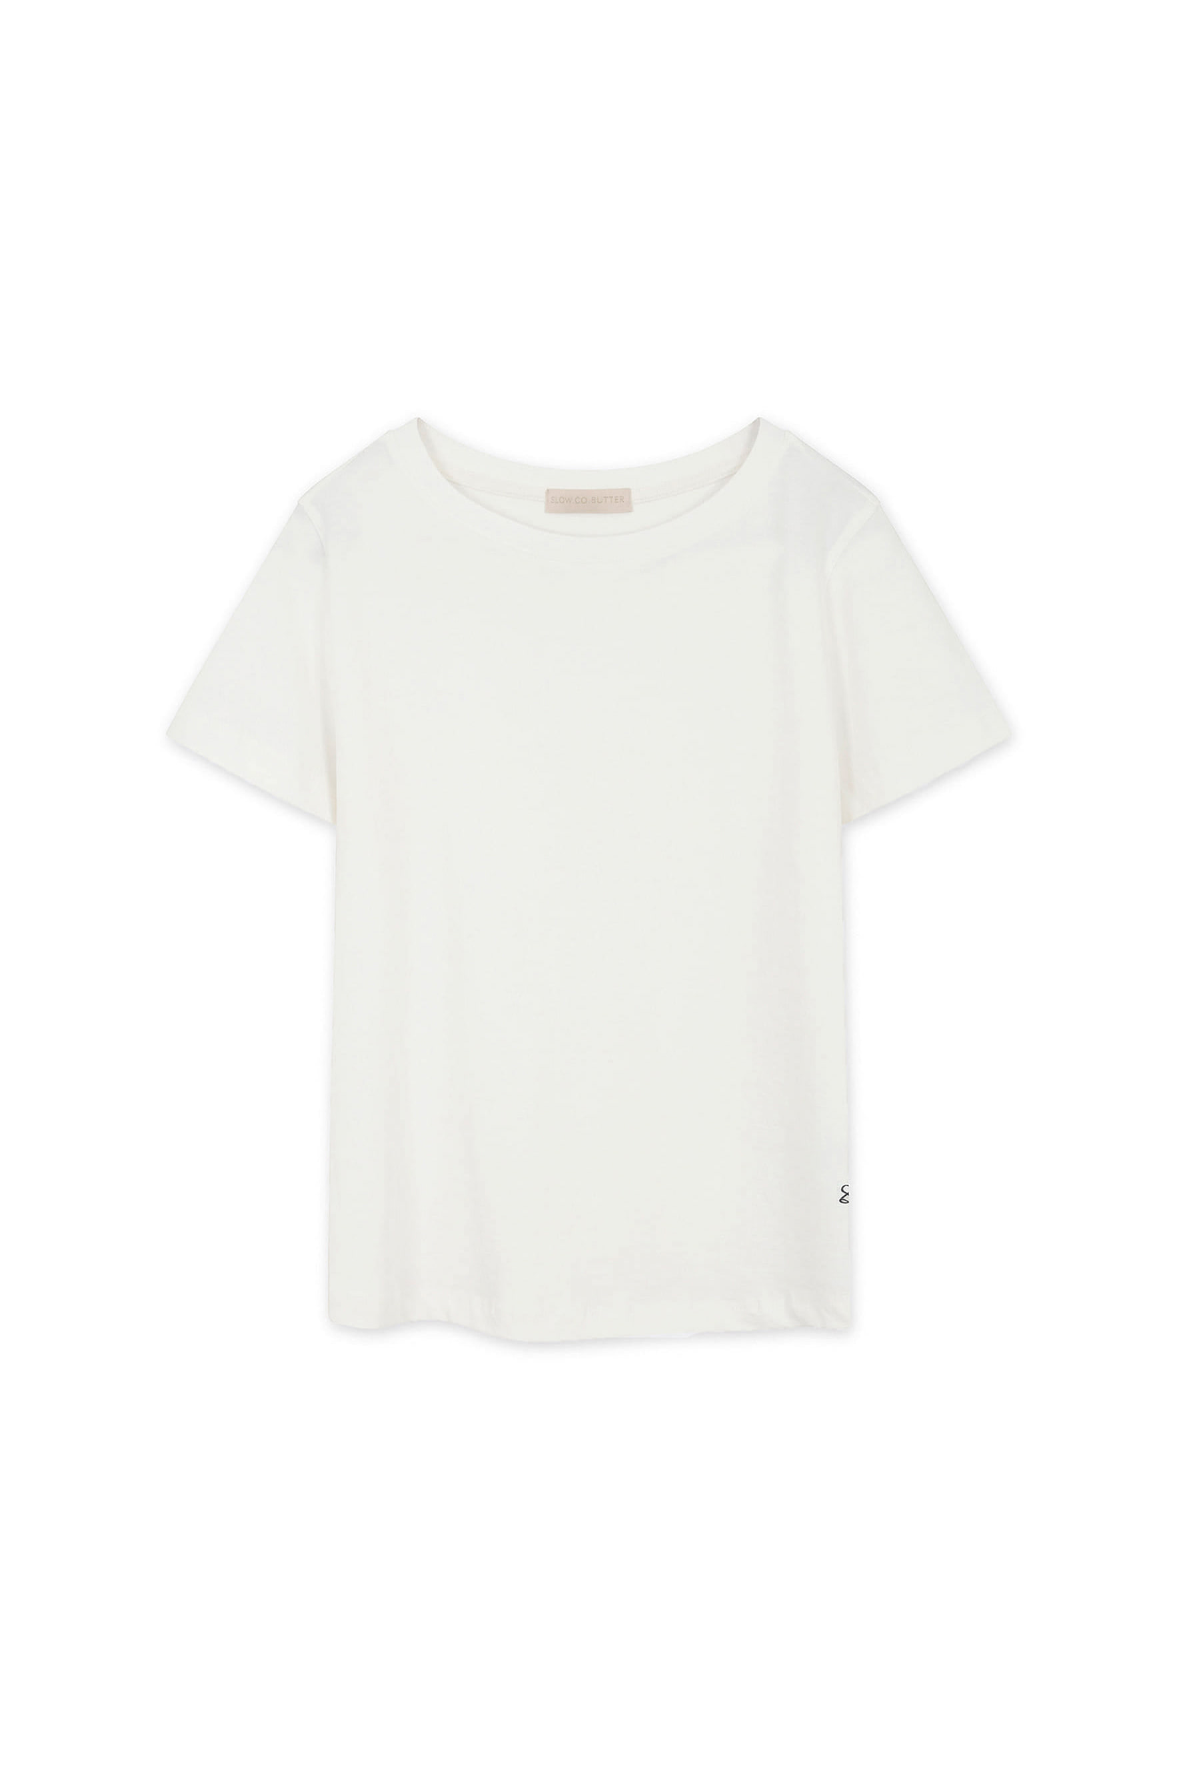 [SLOCO] Classic fit logo tshirt, white